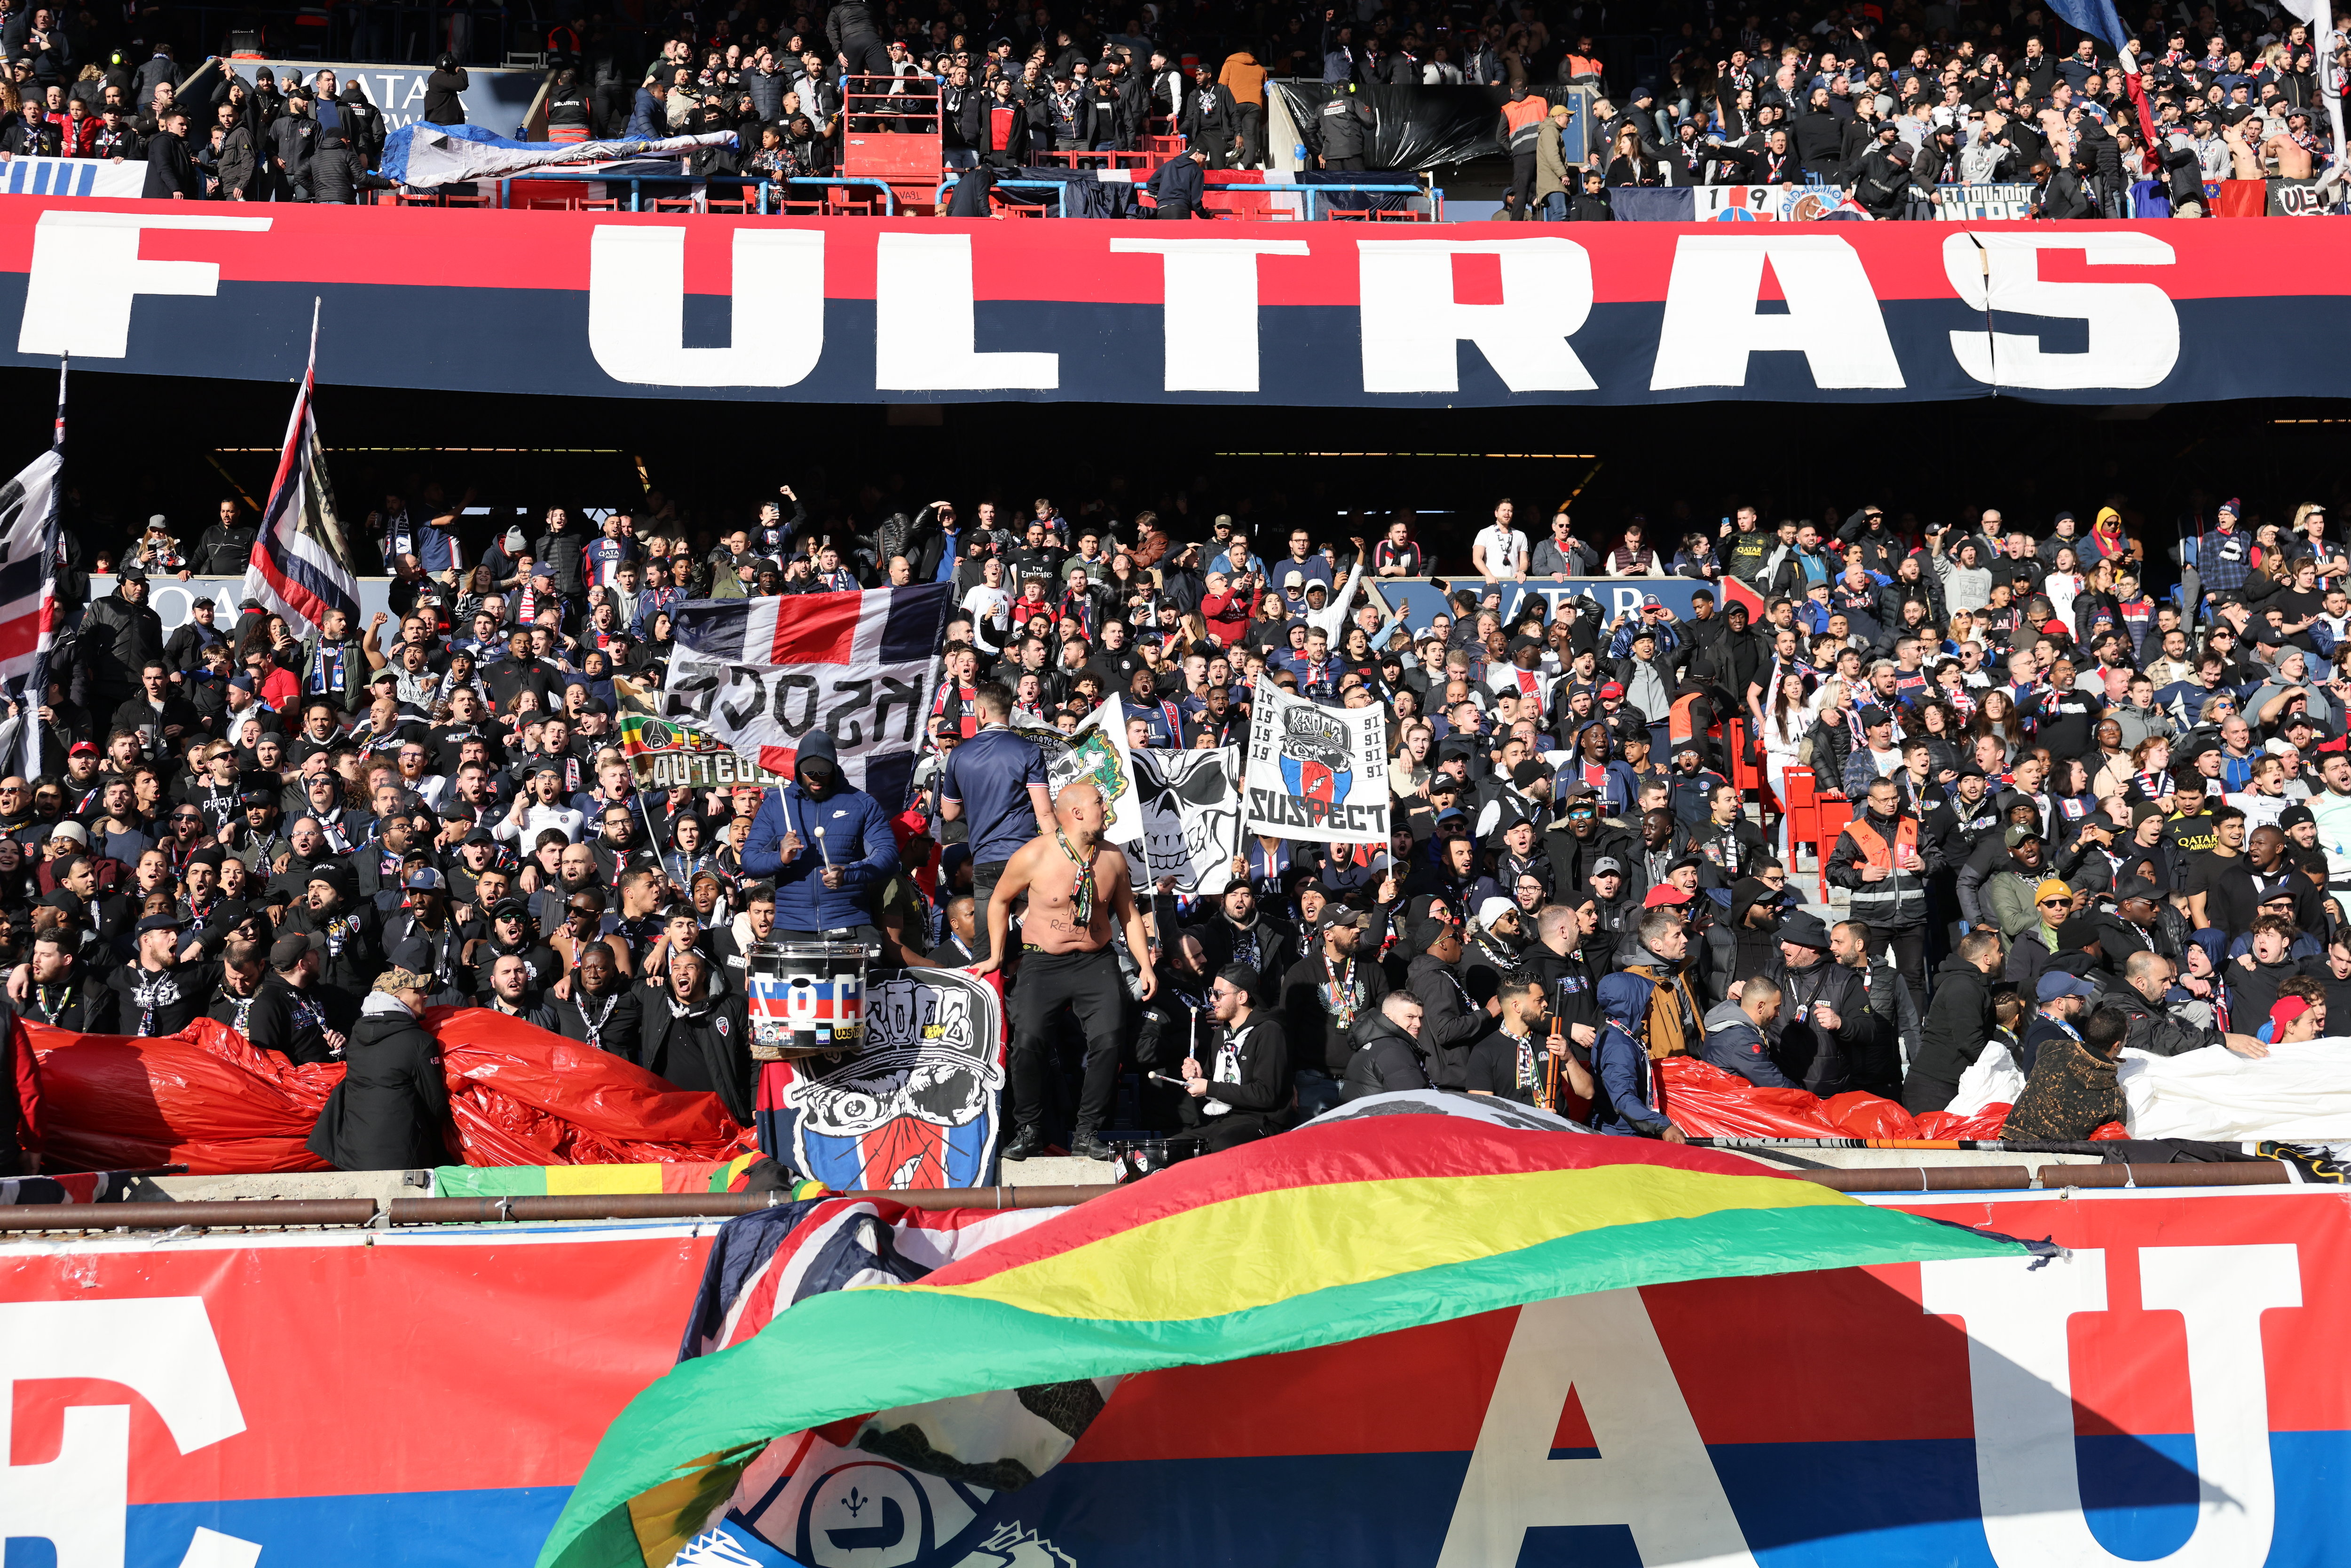 Le Collectif Ultra Paris met la pression dans l'affaire des propos racistes prêtés à son entraîneur quand il dirigeait l'OGC Nice. LP/Arnaud Journois